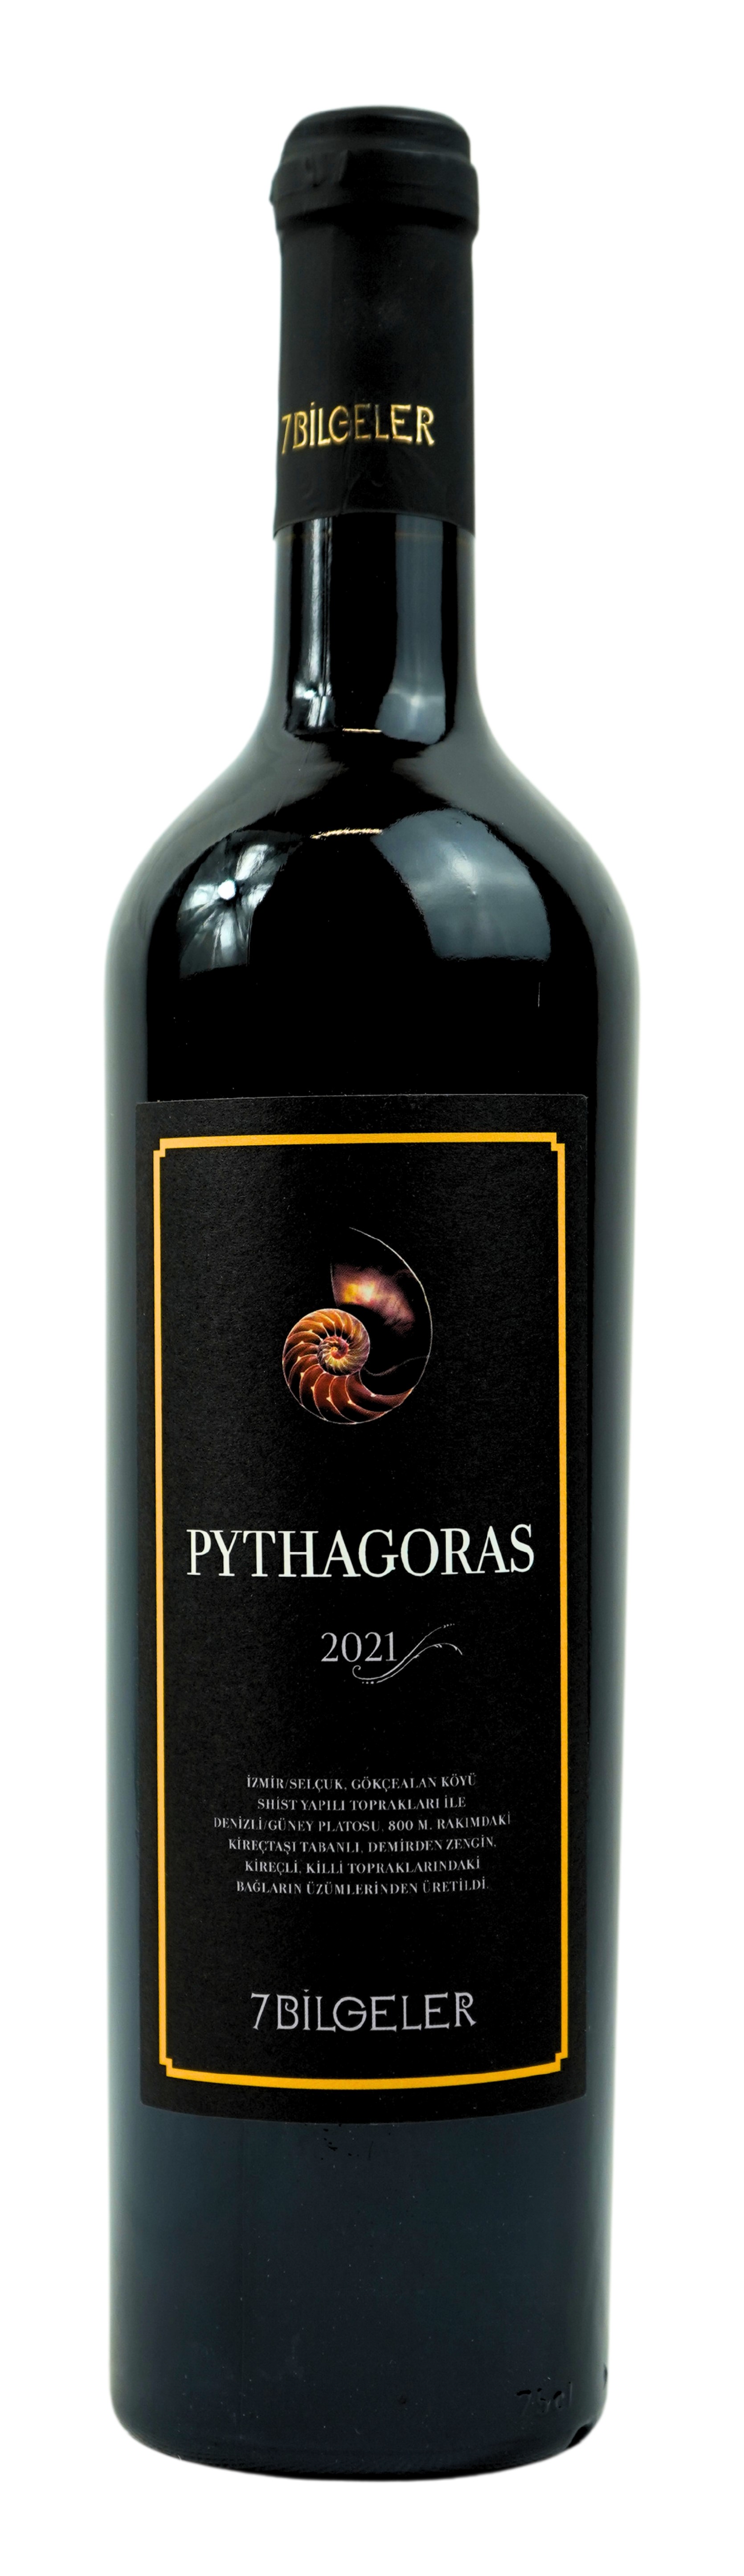 2021 Pythagoras